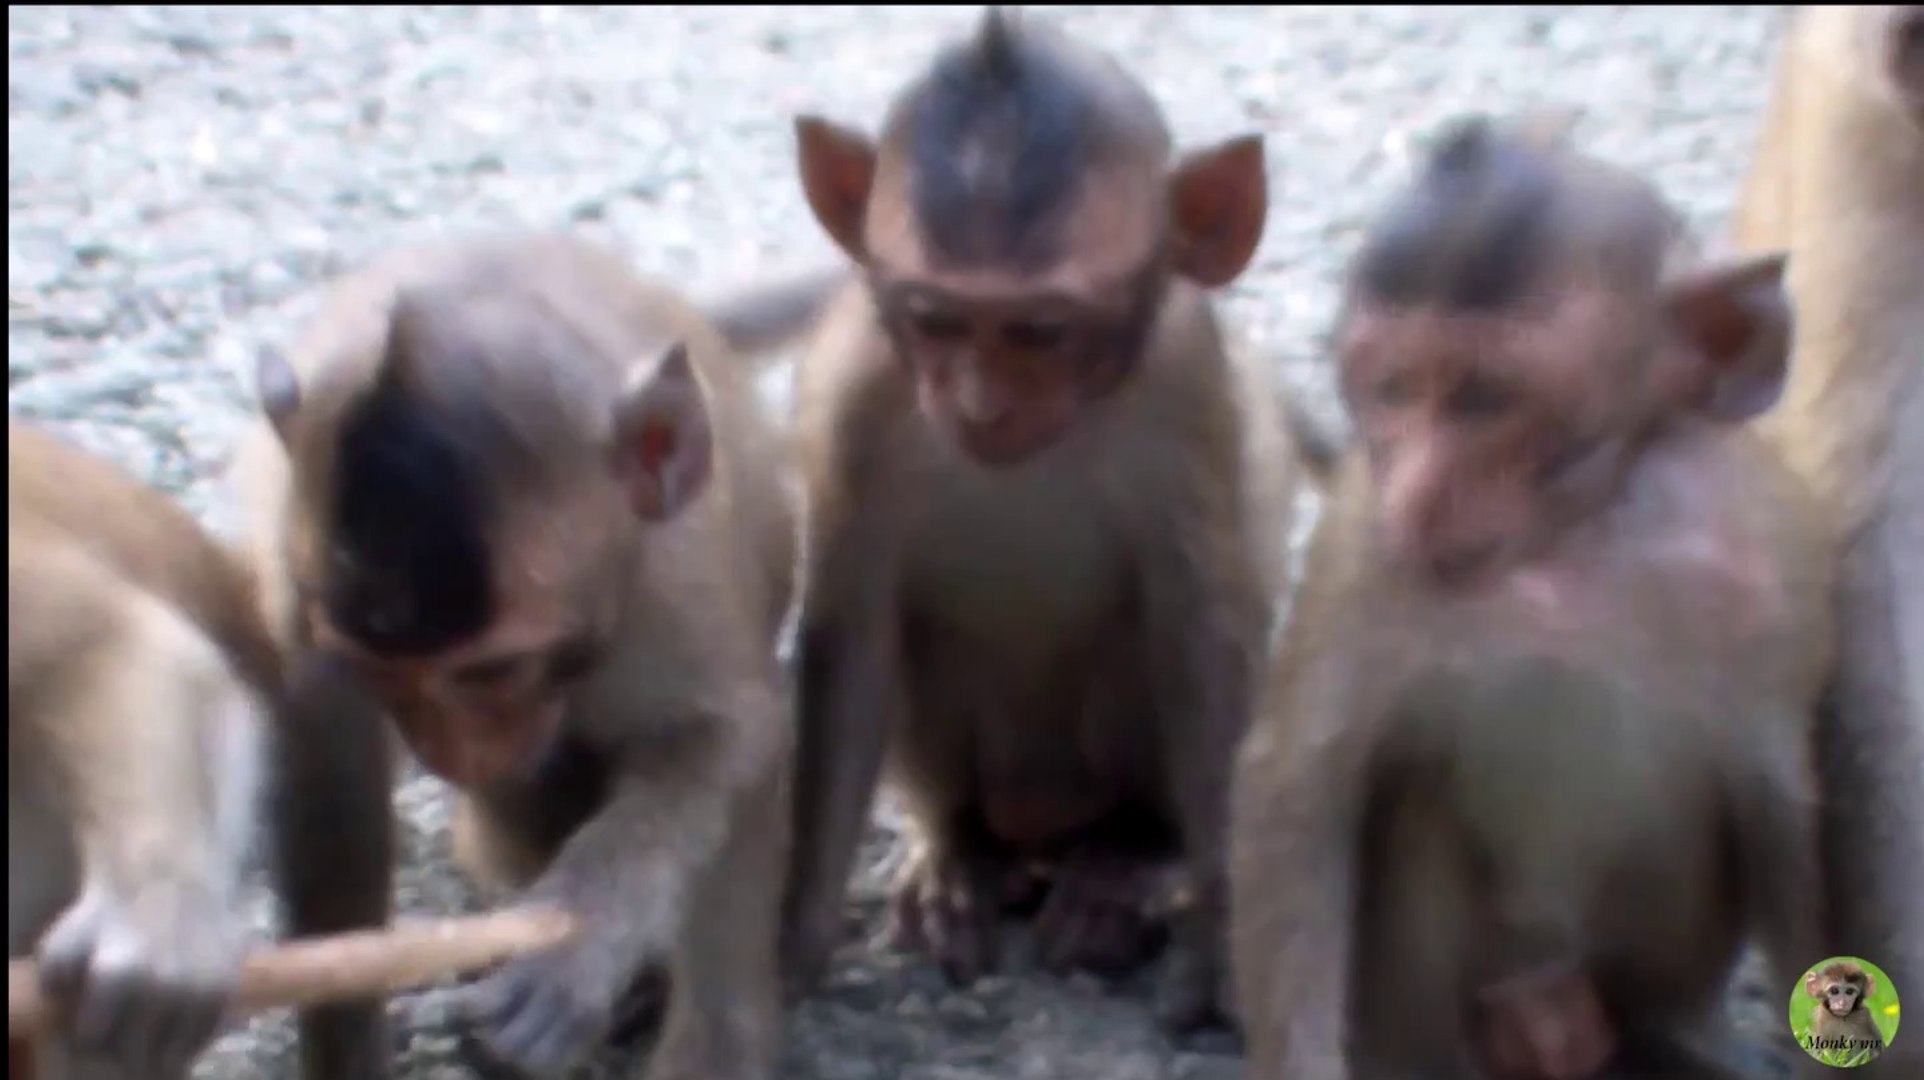 Wild monkey – Monkey eating rice and playing